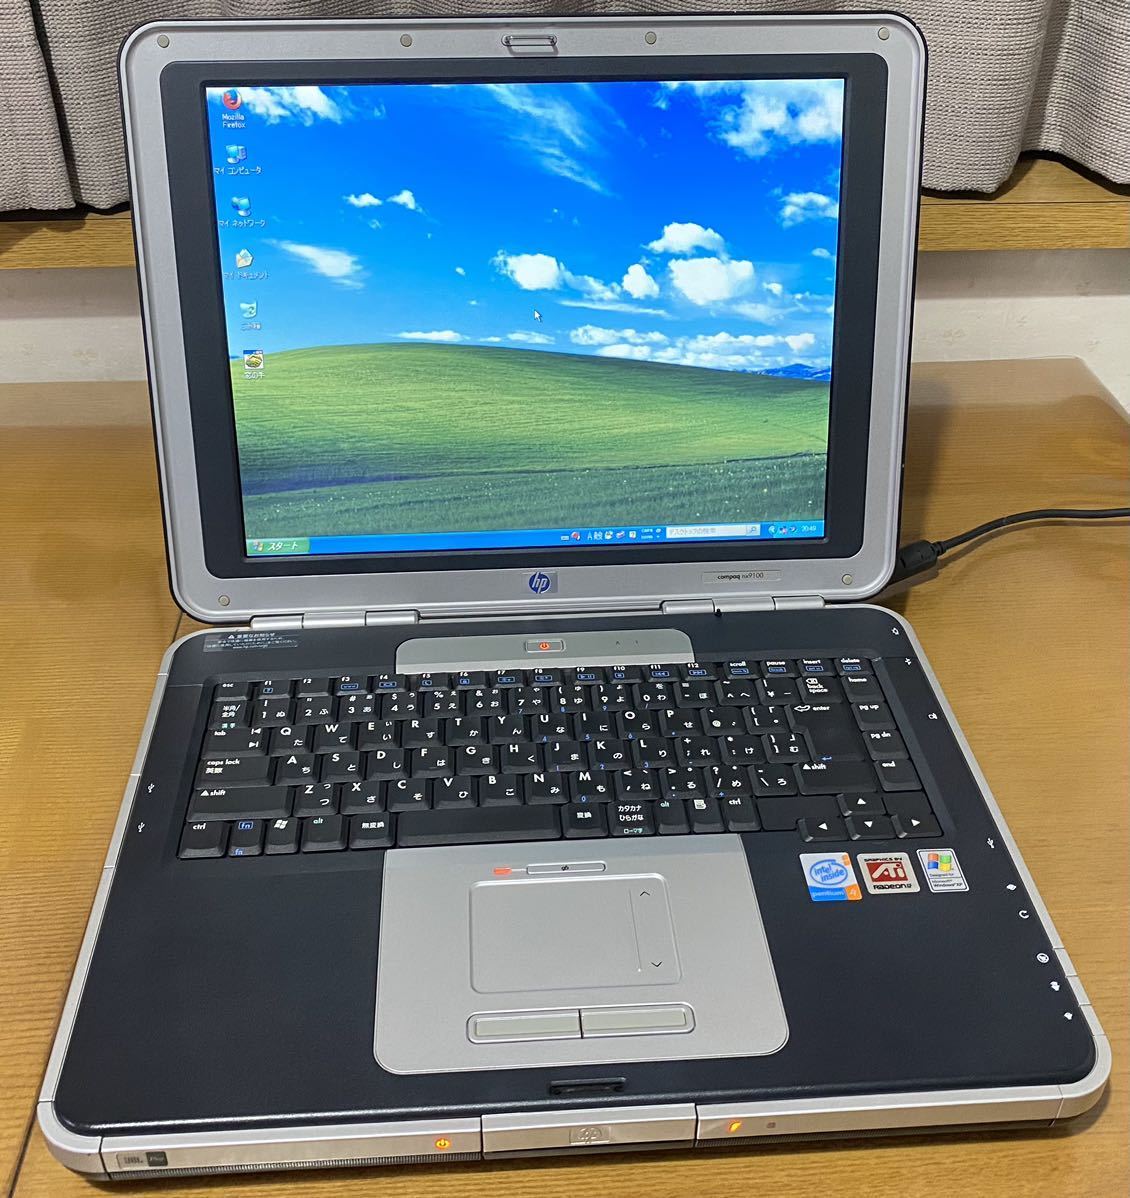 中古良品 HP compaq nx9100 ノートパソコン 動作確認&オーバーホール済 Windows XP Professional搭載 JBL Proスピーカー&Northwood Pen4_全体